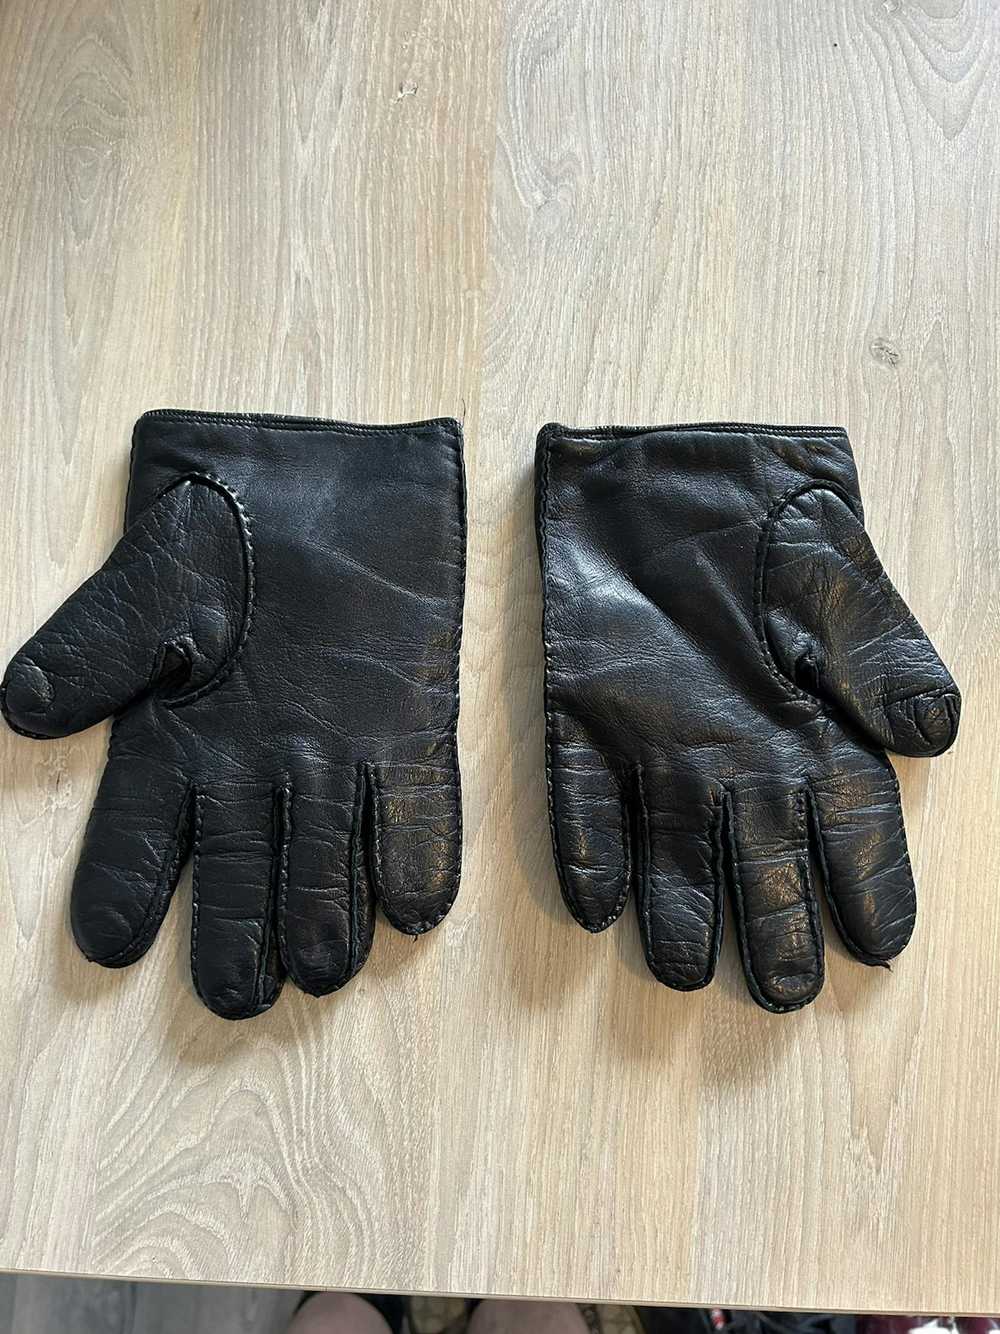 Vivienne Westwood Leather Skull Gloves - image 6